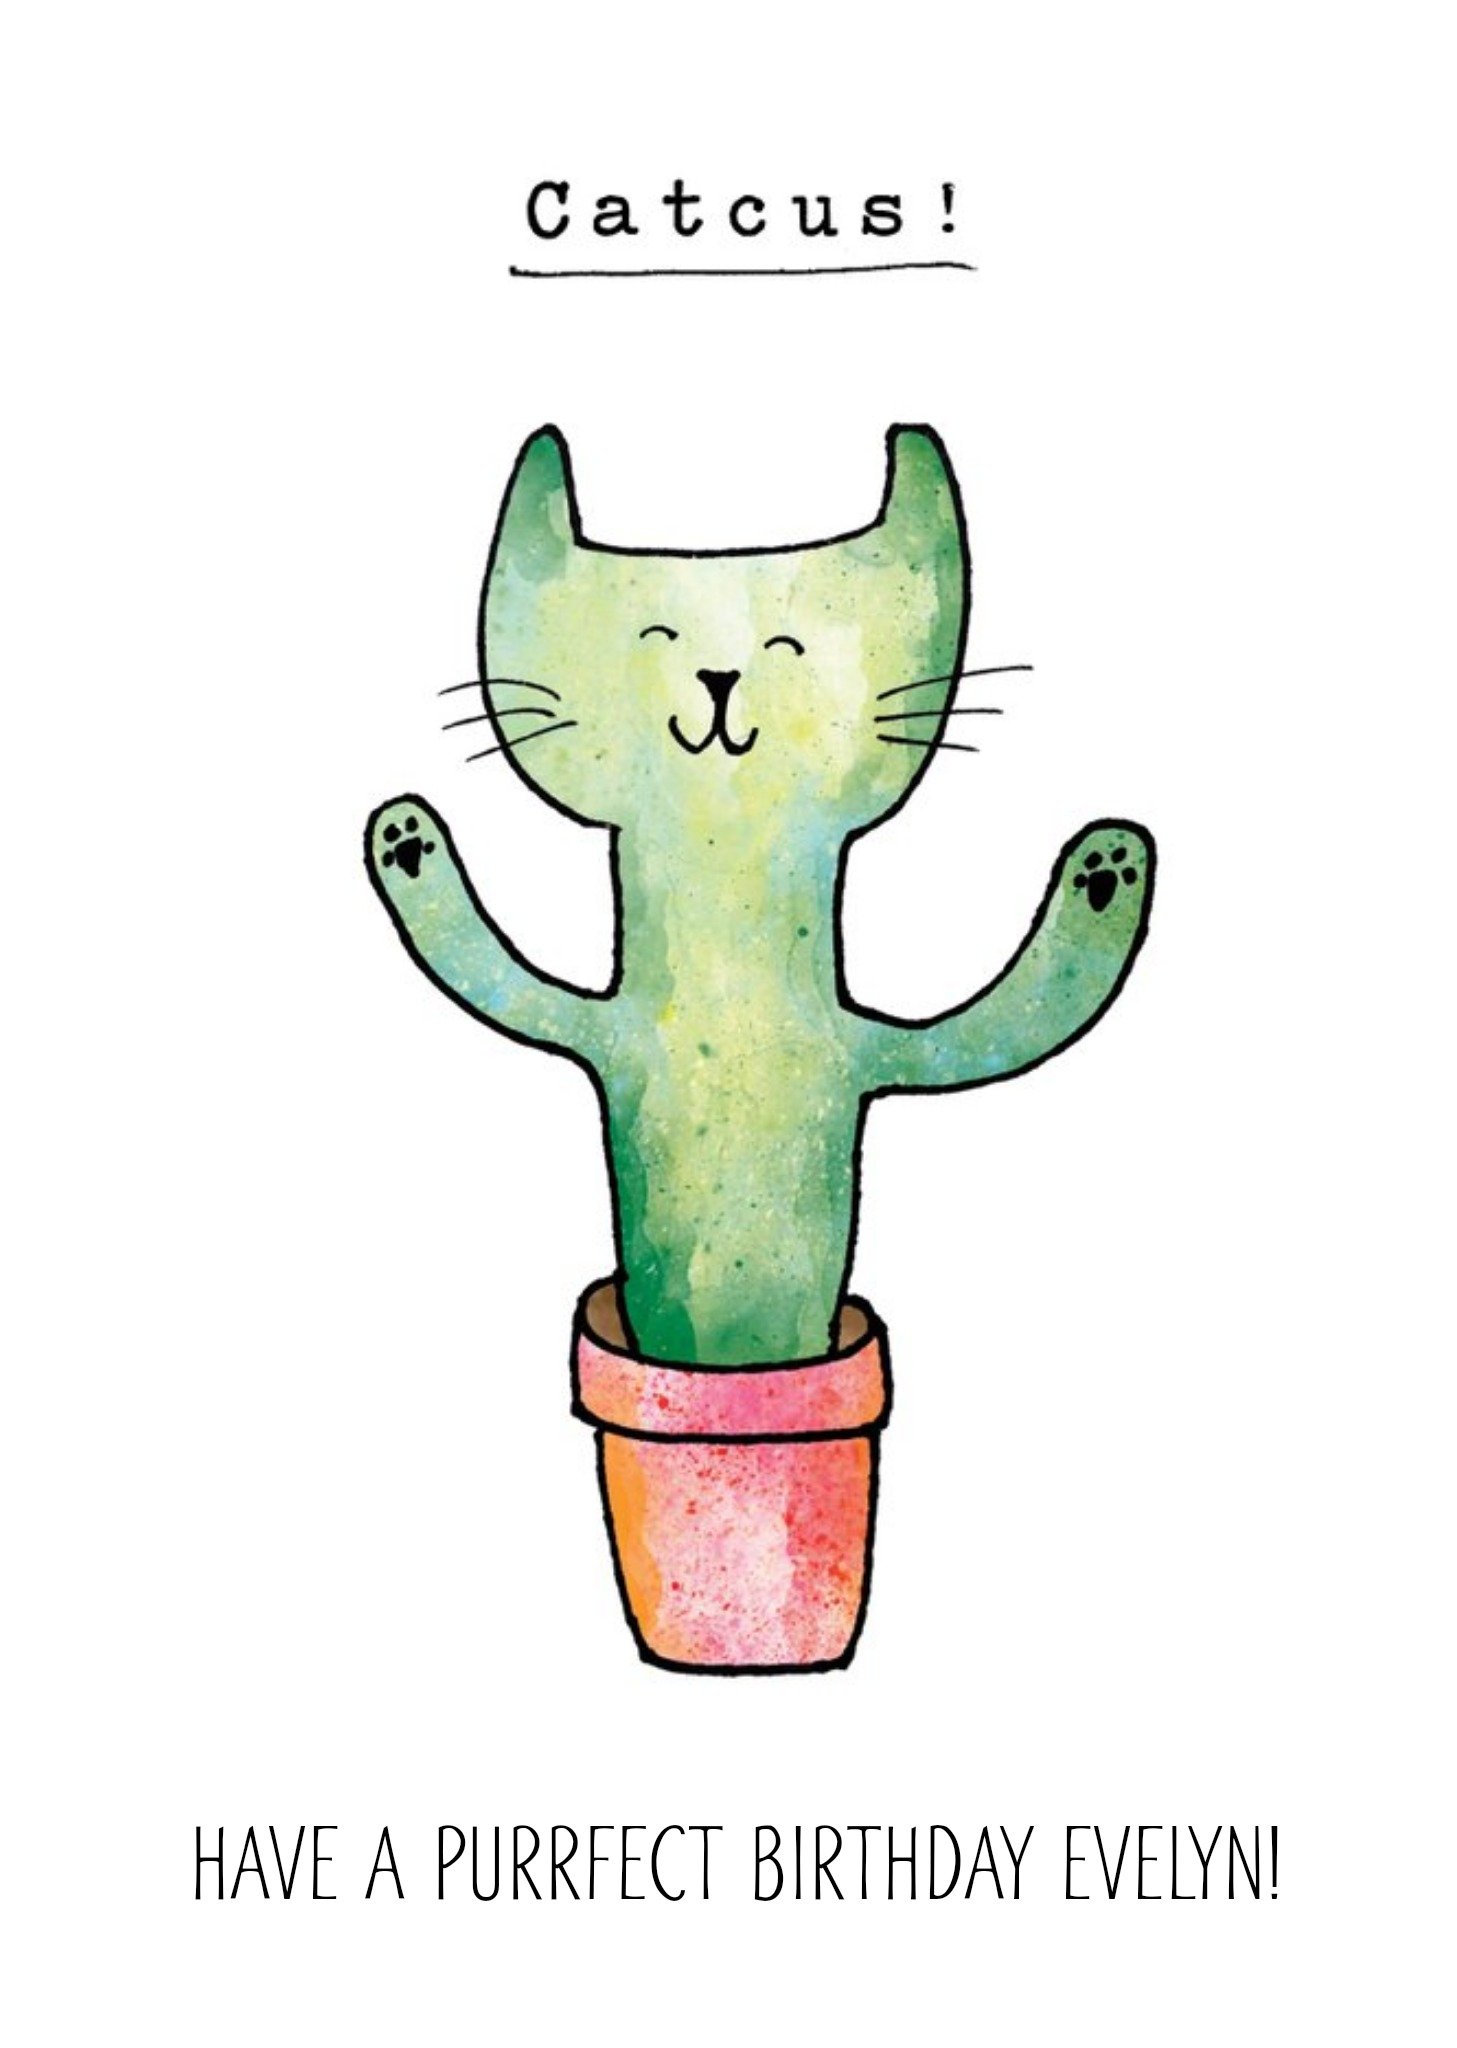 Moonpig Funny Cat Cactus Catcus Birthday Card Ecard